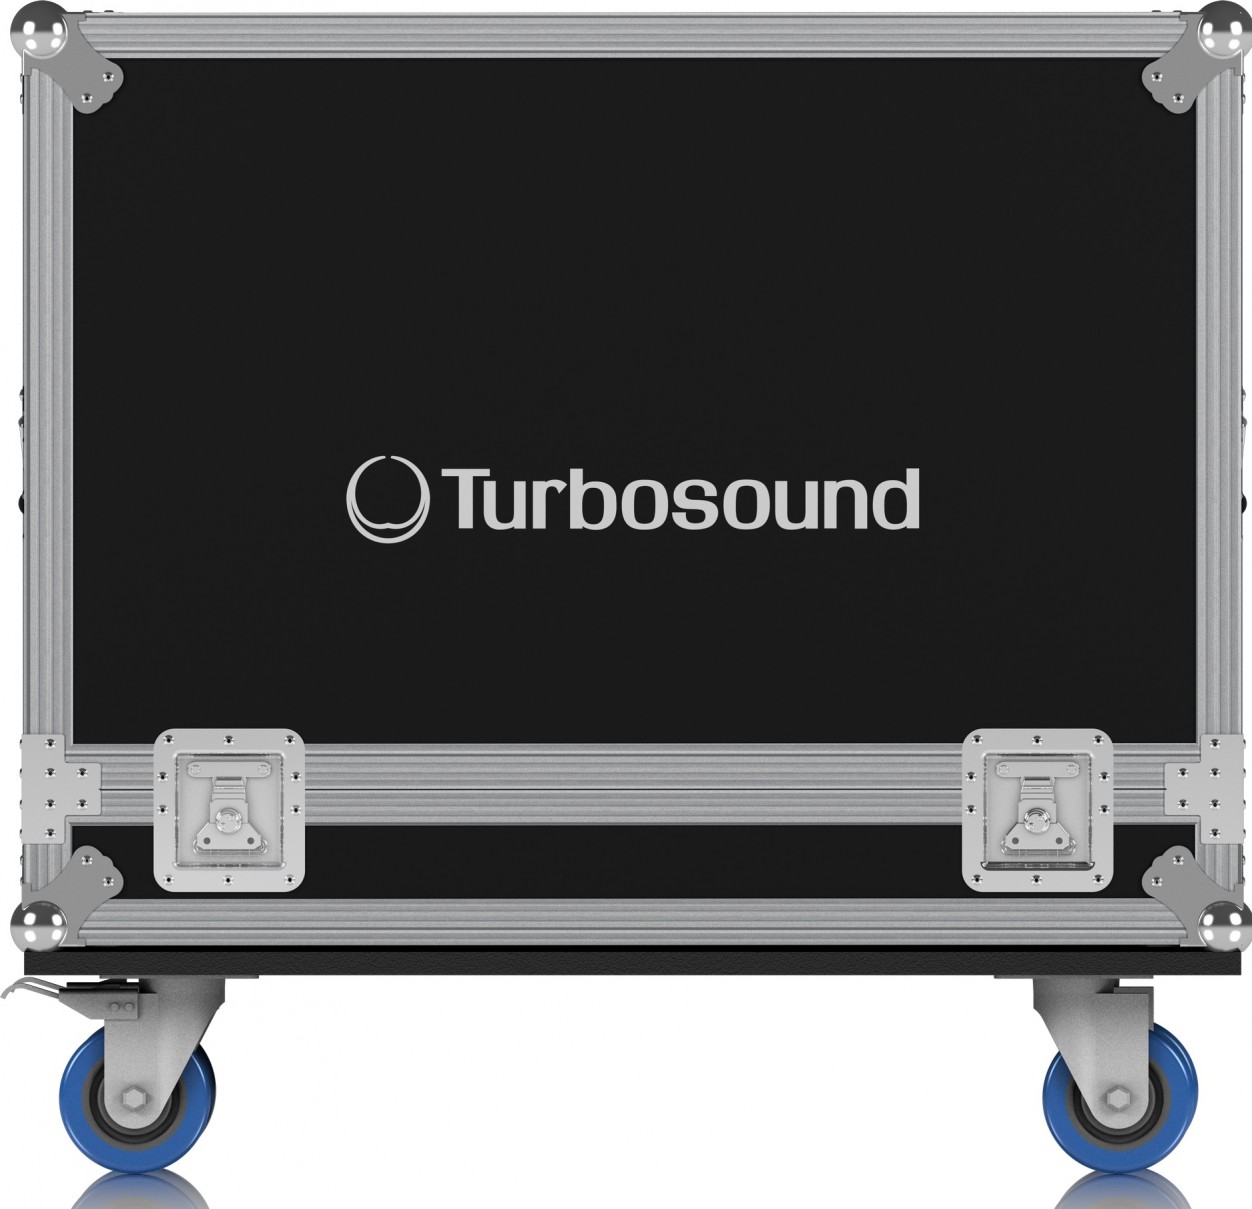 Turbosound Berlin TBV118L-RC1 транспортировочный кейс на колёсах для одного сабвуфера TBV118L